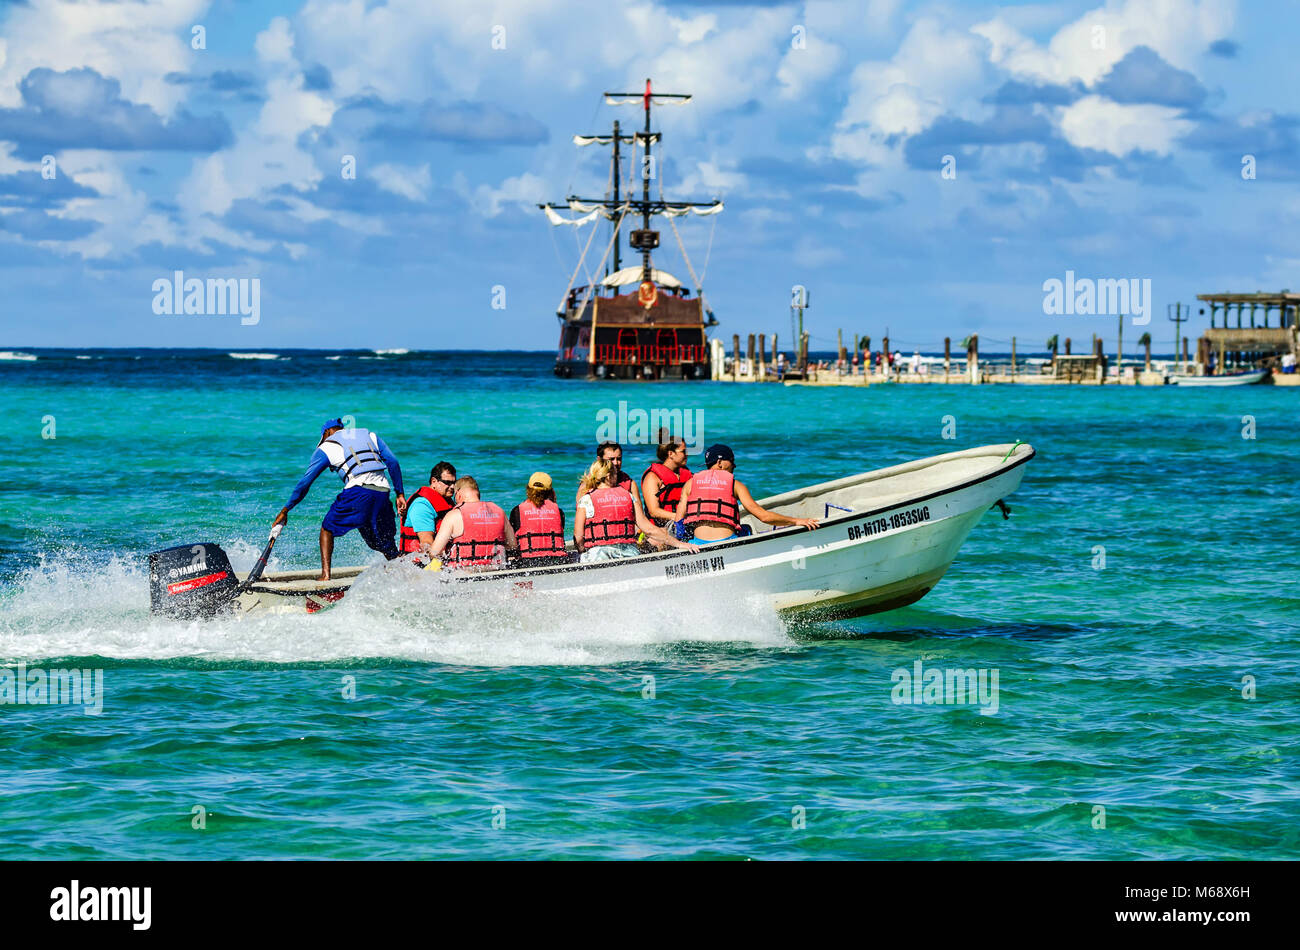 SANTO DOMINGO, República Dominicana - Octubre 29, 2015: Los turistas en bote sobre el agua Foto de stock